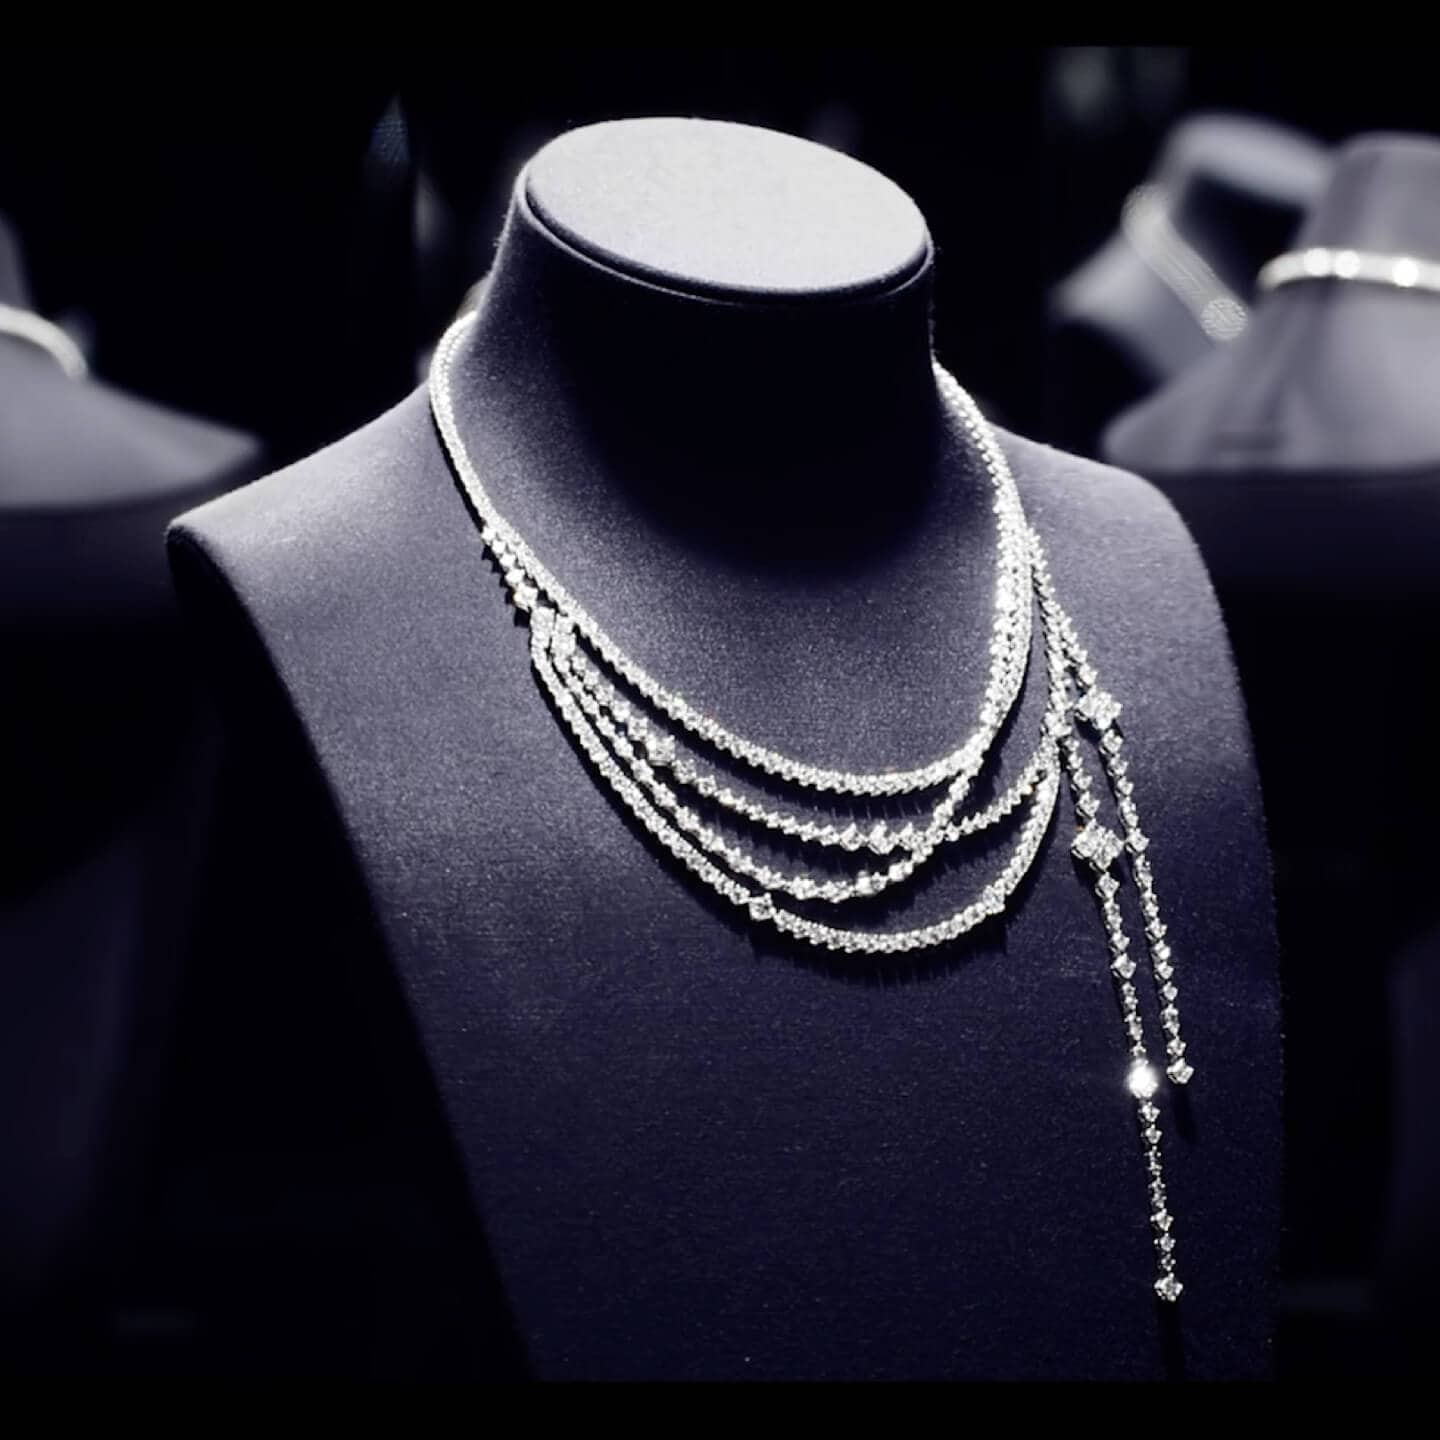 Buy Spinner necklace Flip necklace, Secret words spinning necklace, silver  flipping necklace, secret message necklace Online at desertcartINDIA